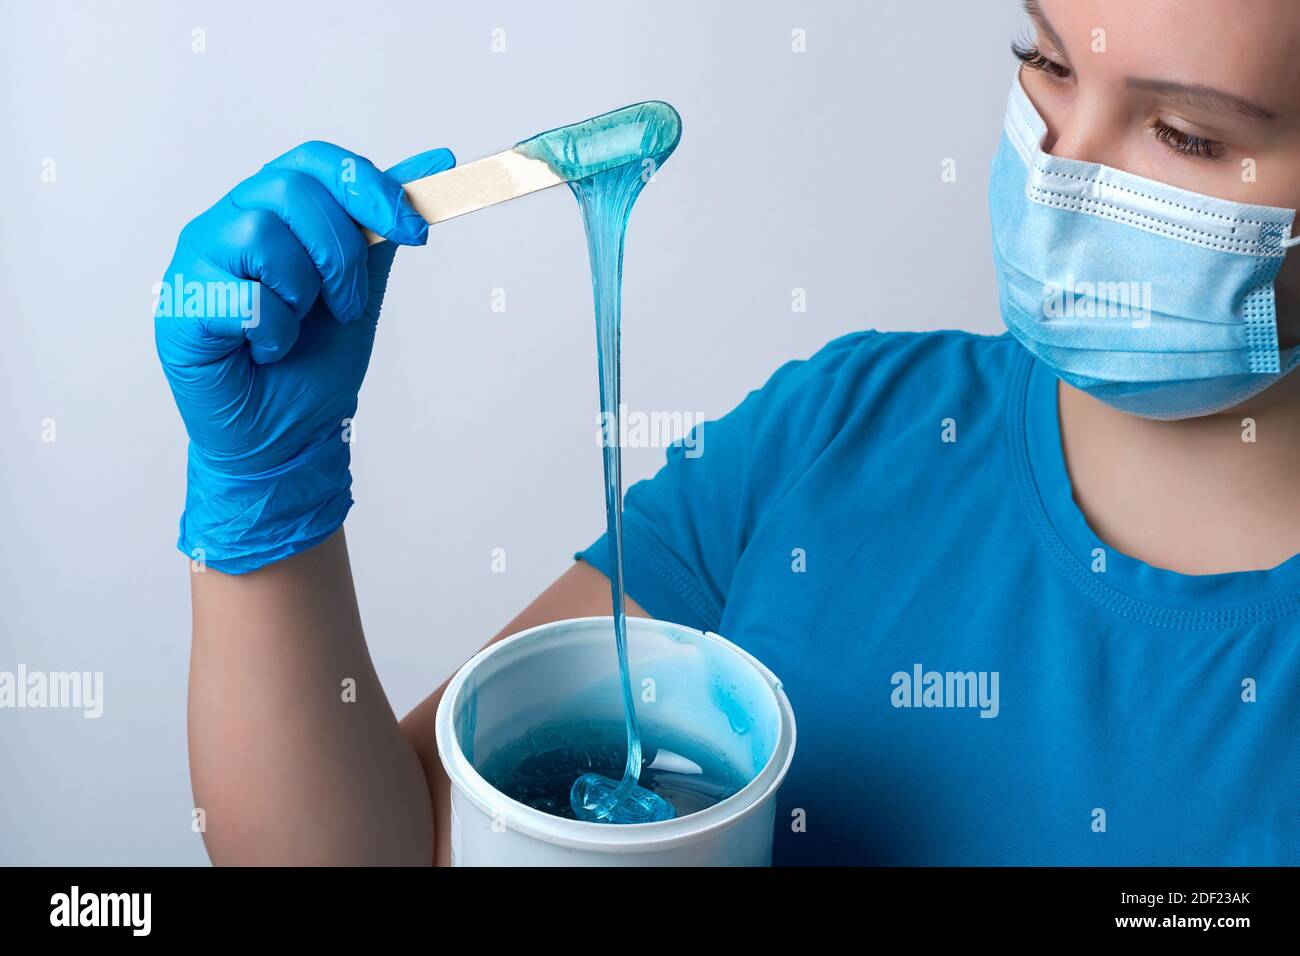 Un maître sugaring en gants bleus et un masque médical tient un bâton de cire de sucre bleu. Épilation et concept de beauté Banque D'Images